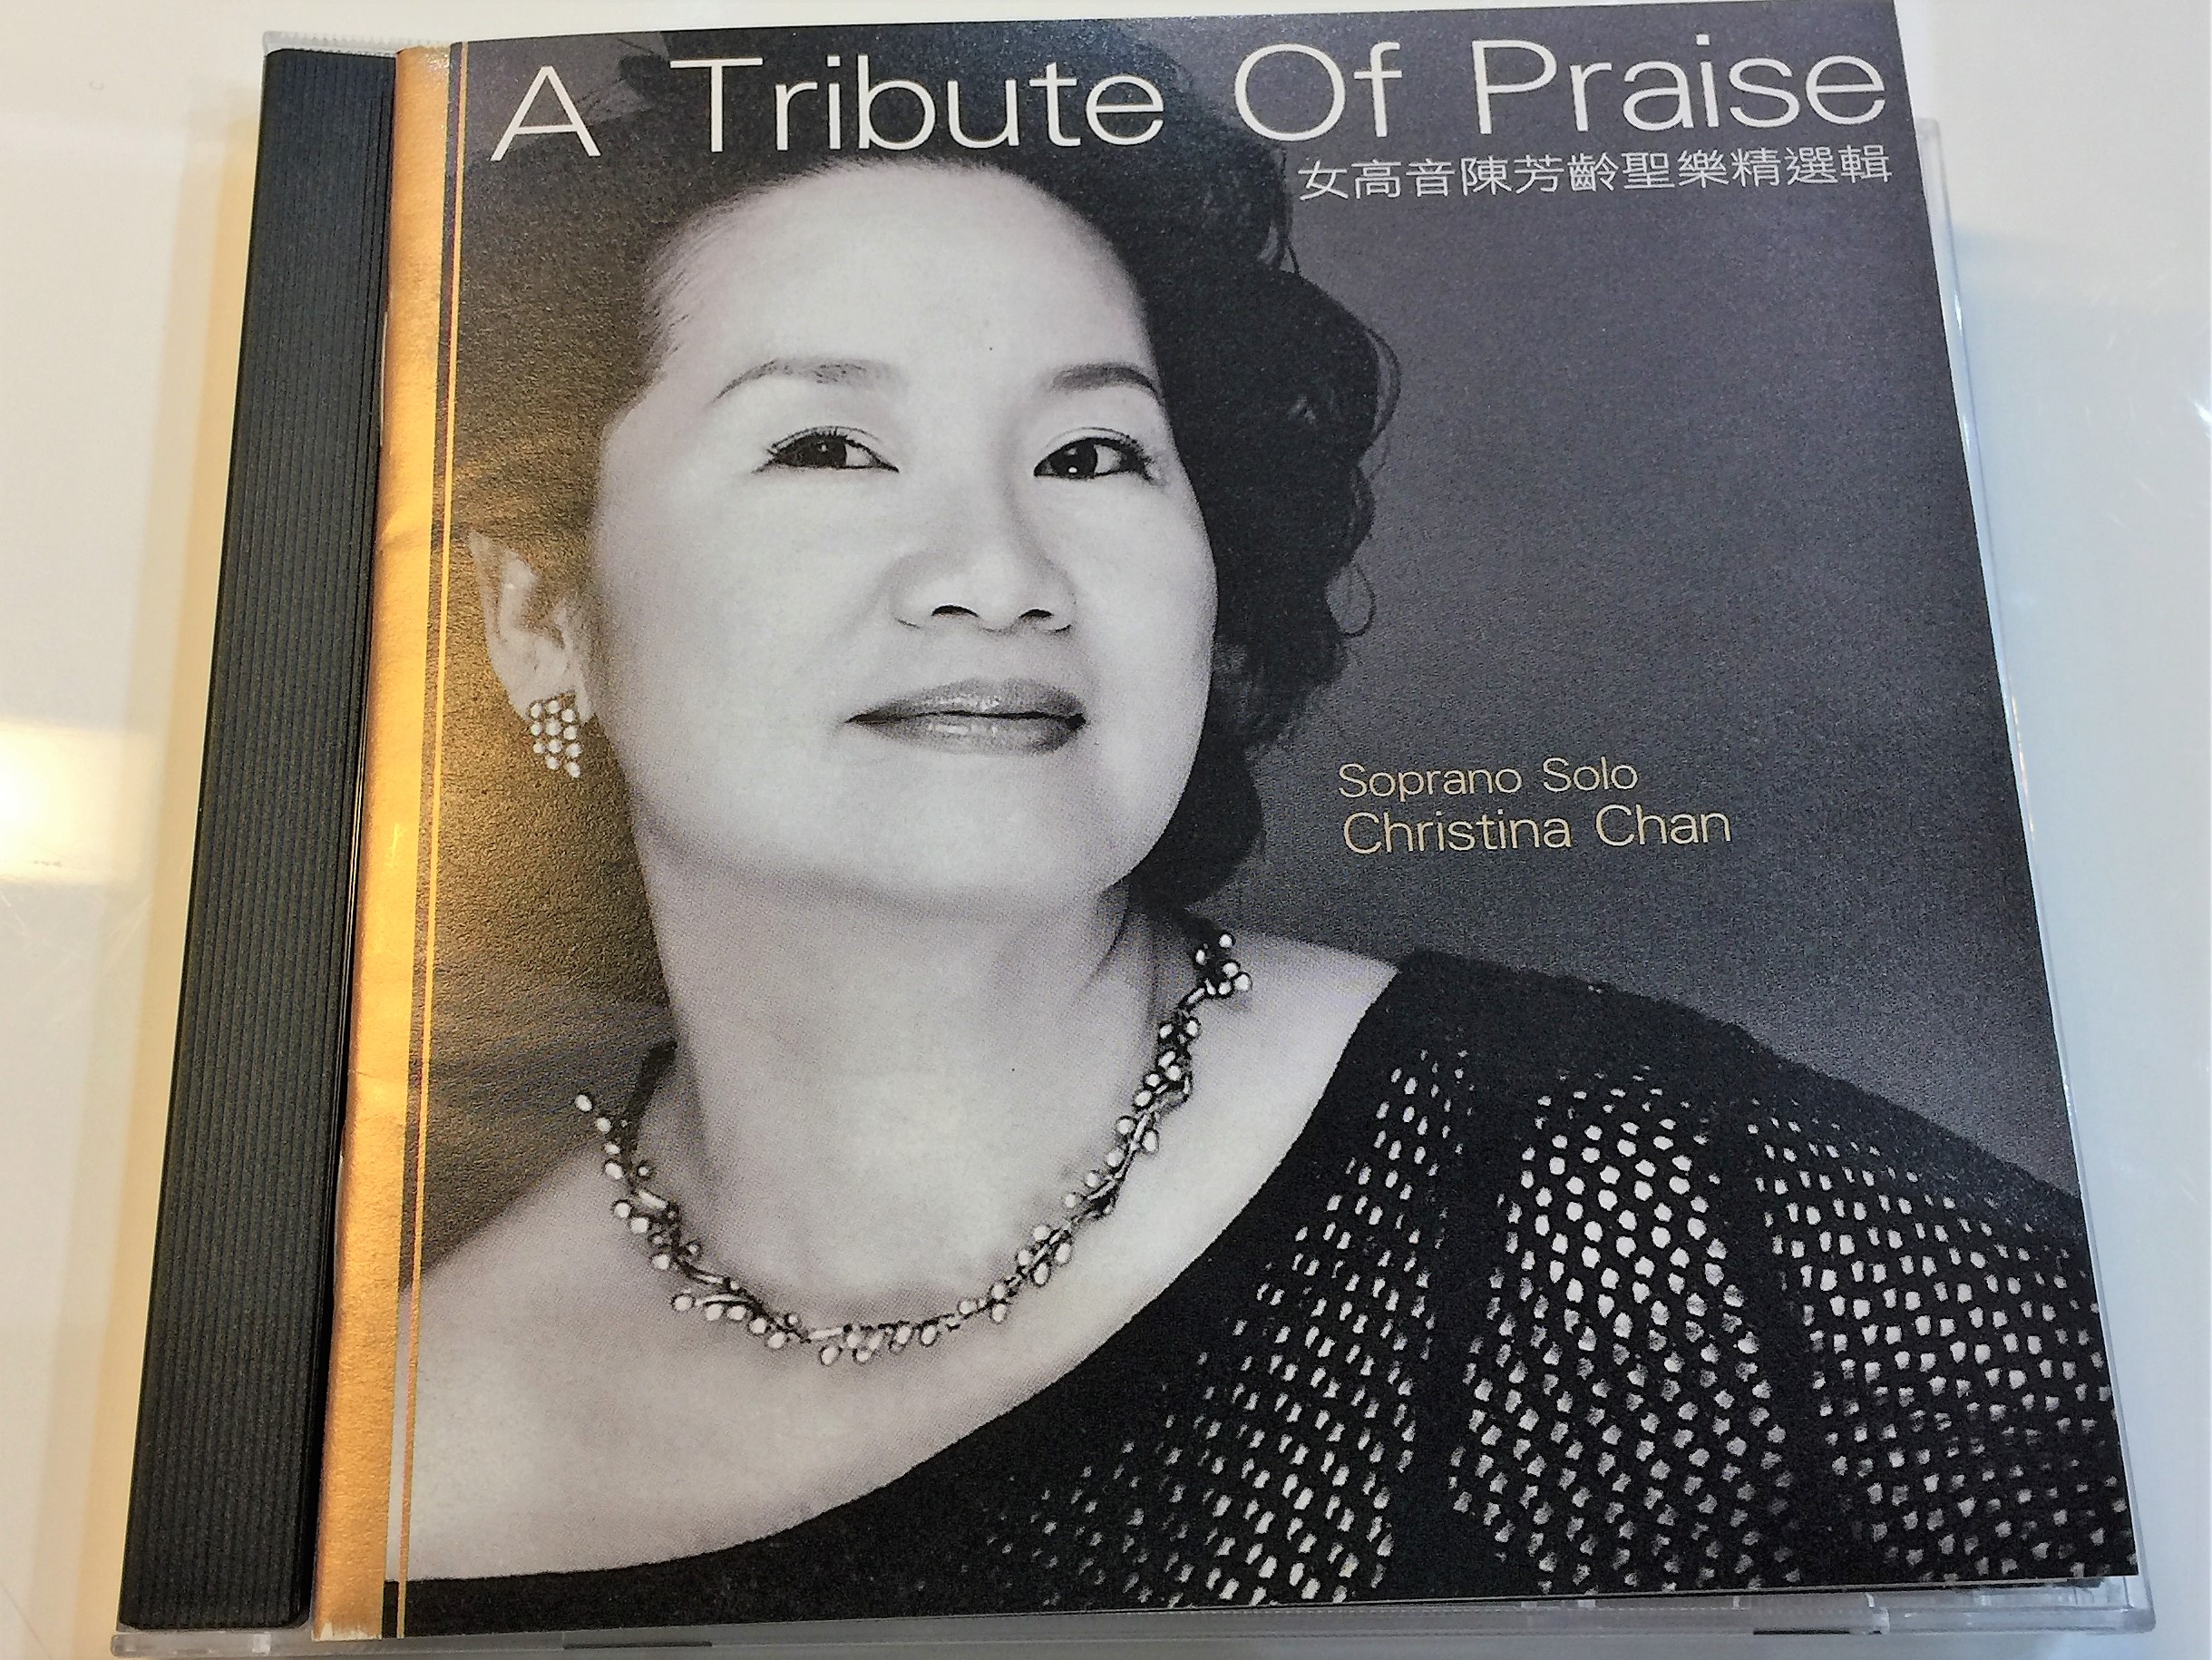 A Tribute of Praise - Soprano Solo Christina Chan 1